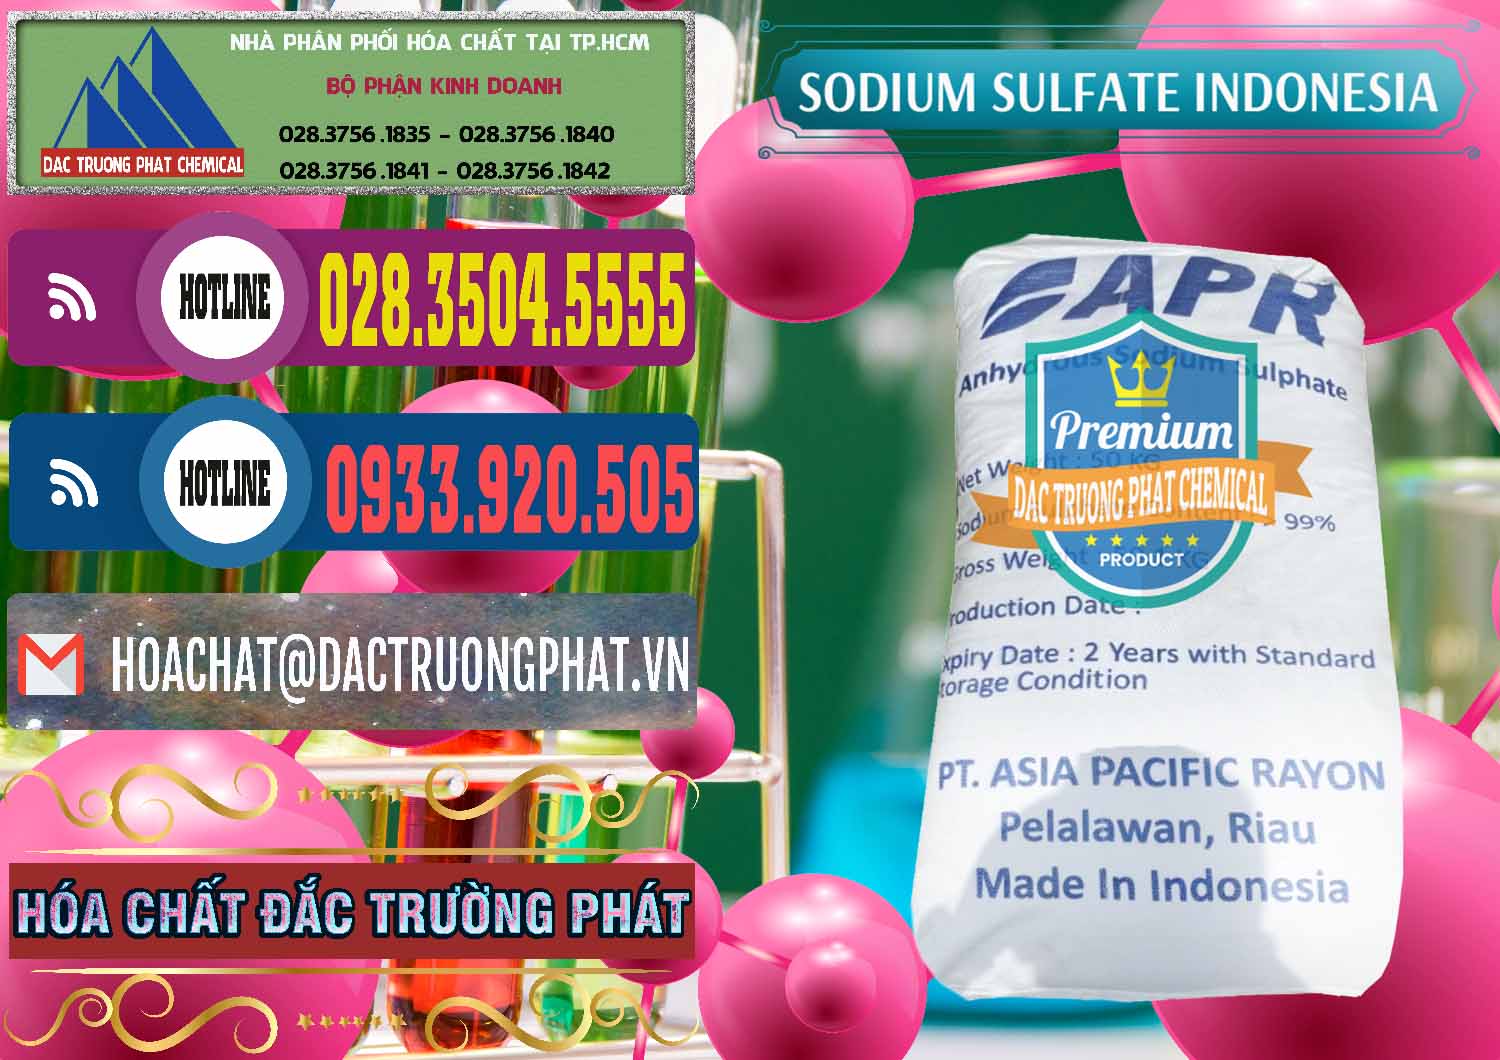 Cty chuyên phân phối & bán Sodium Sulphate - Muối Sunfat Na2SO4 APR Indonesia - 0460 - Cty cung cấp _ bán hóa chất tại TP.HCM - muabanhoachat.com.vn